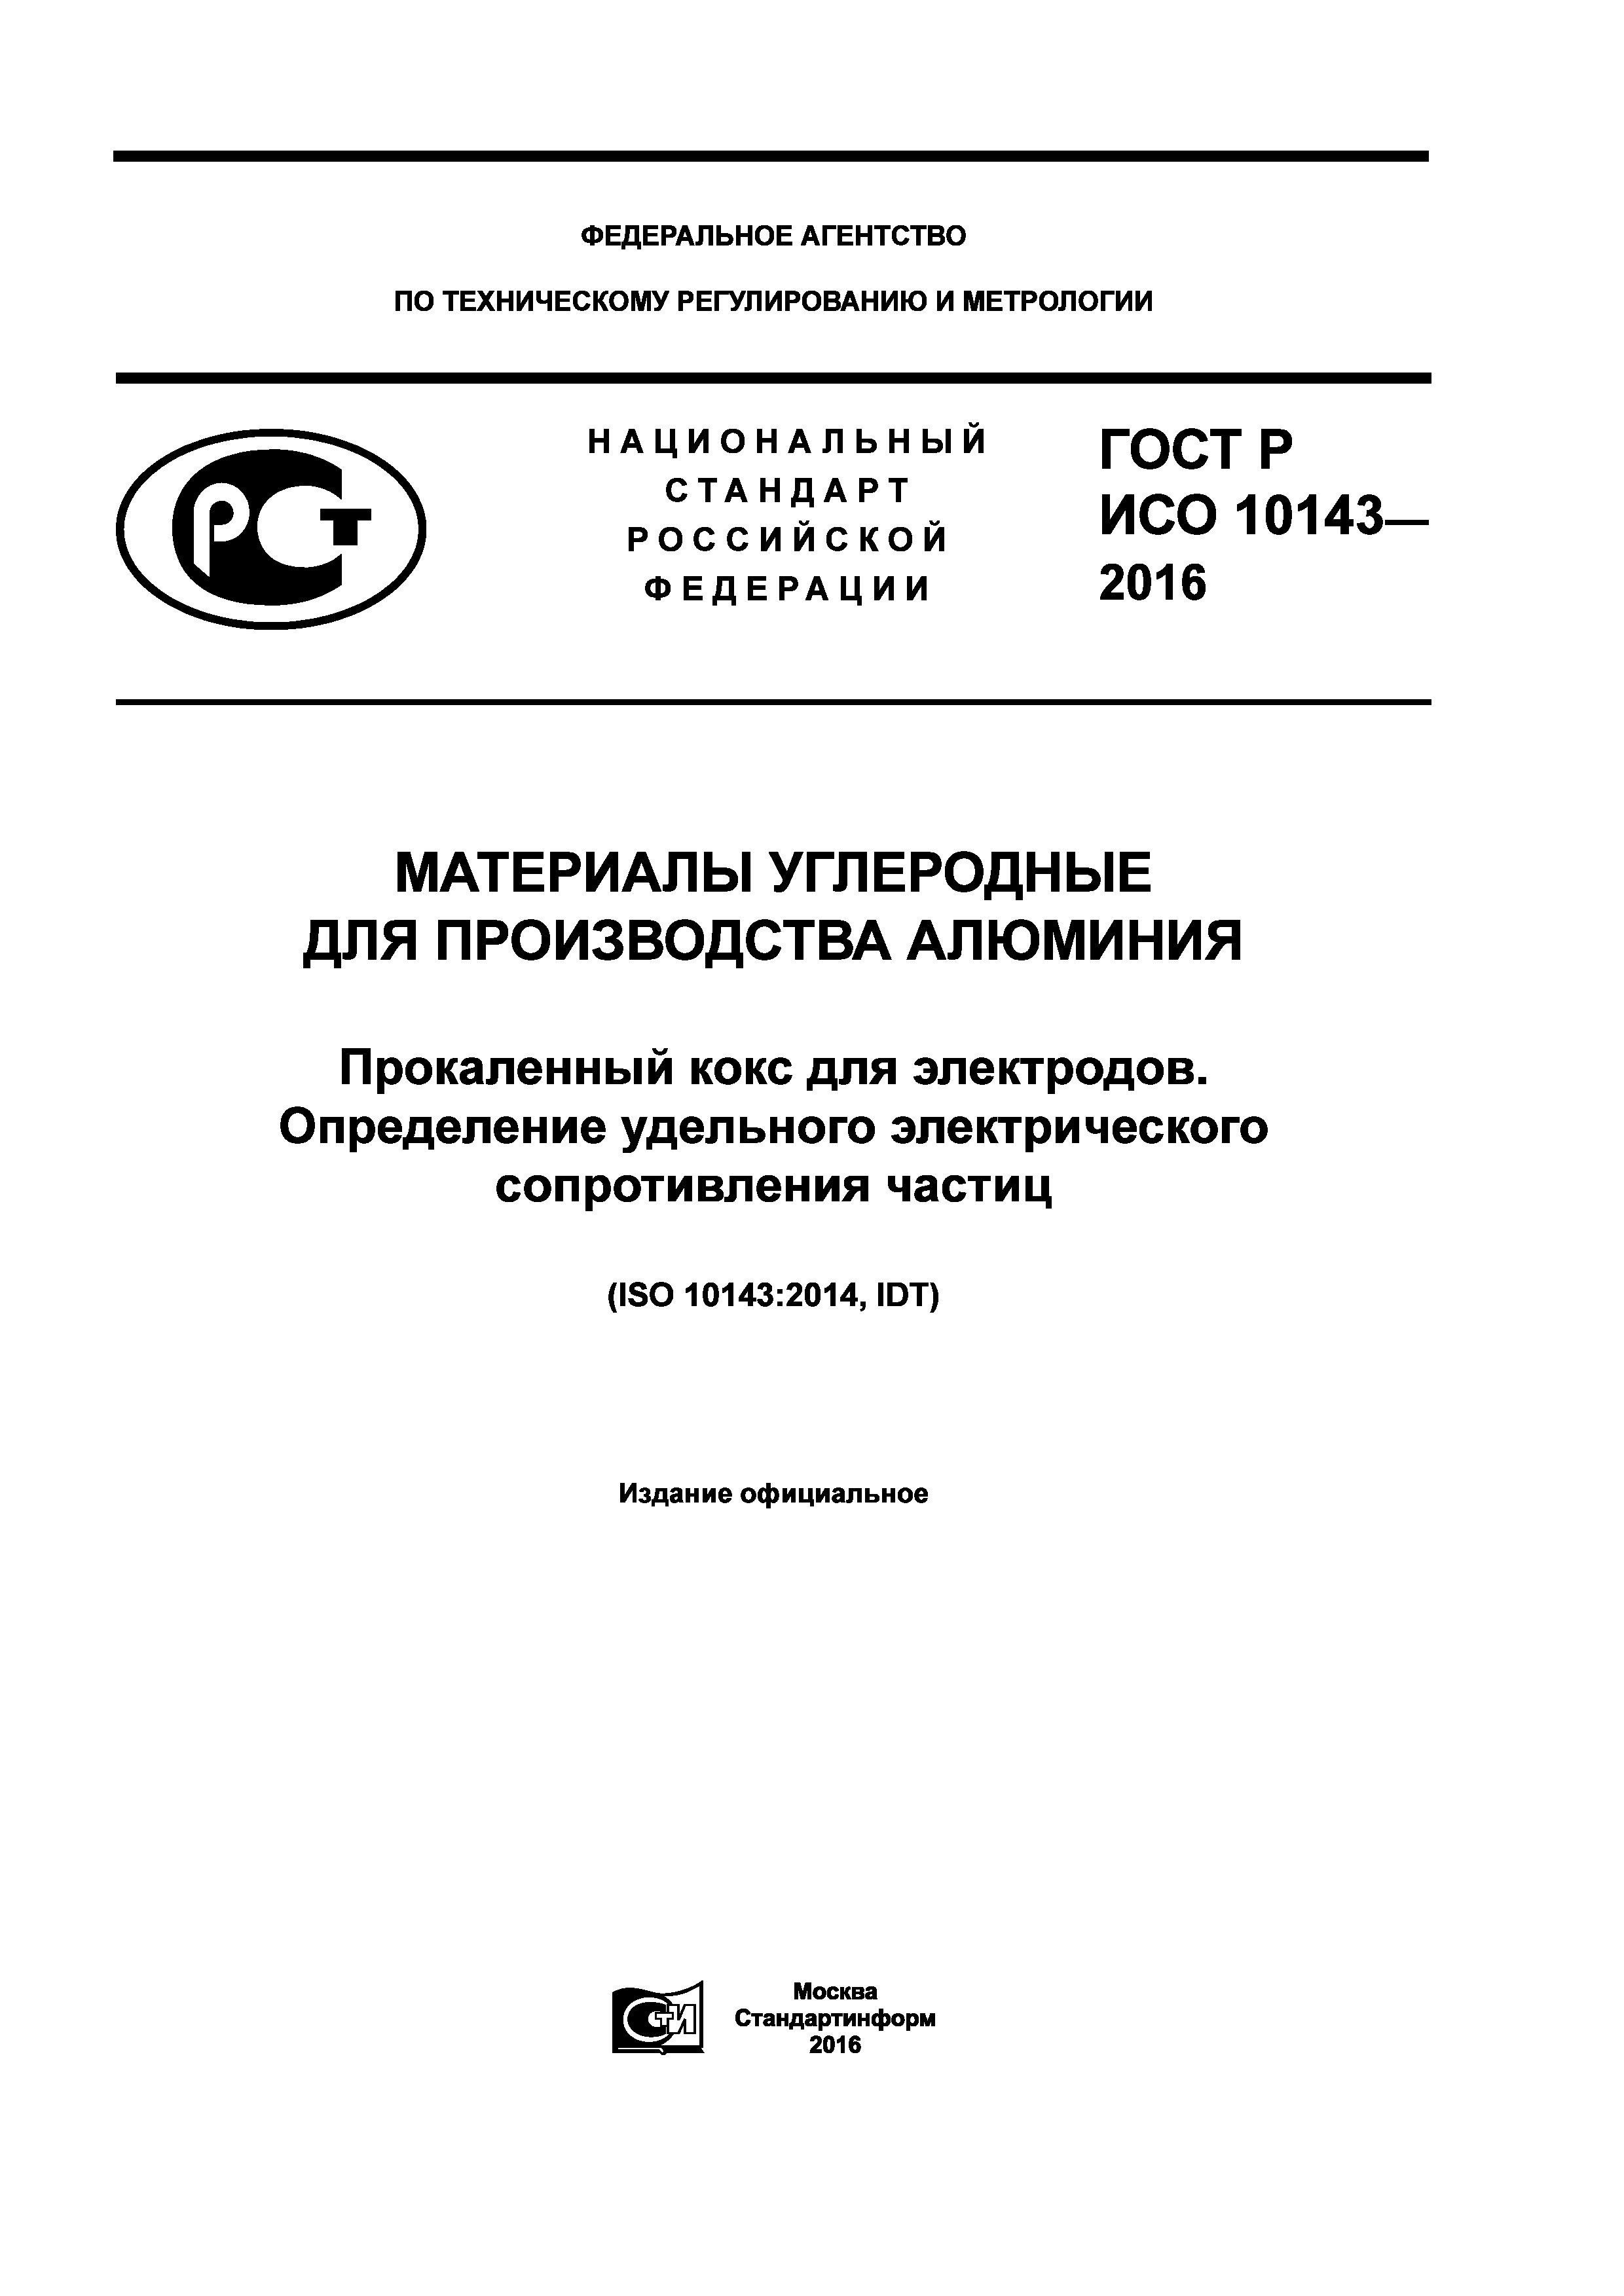 ГОСТ Р ИСО 10143-2016